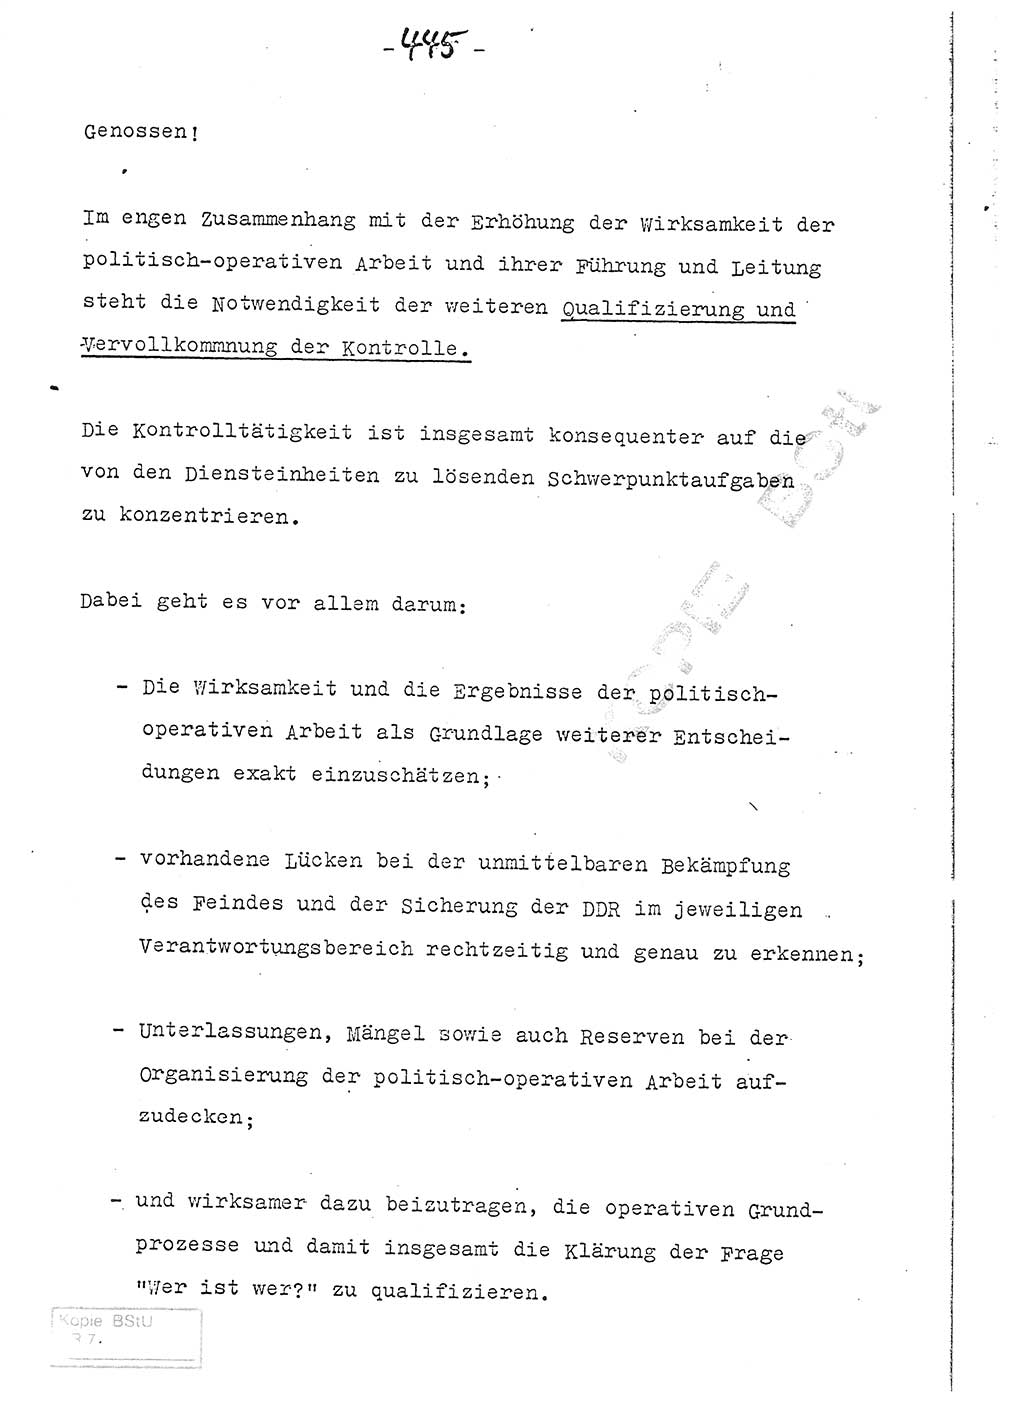 Referat (Entwurf) des Genossen Minister (Generaloberst Erich Mielke) auf der Dienstkonferenz 1972, Ministerium für Staatssicherheit (MfS) [Deutsche Demokratische Republik (DDR)], Der Minister, Geheime Verschlußsache (GVS) 008-150/72, Berlin 25.2.1972, Seite 445 (Ref. Entw. DK MfS DDR Min. GVS 008-150/72 1972, S. 445)